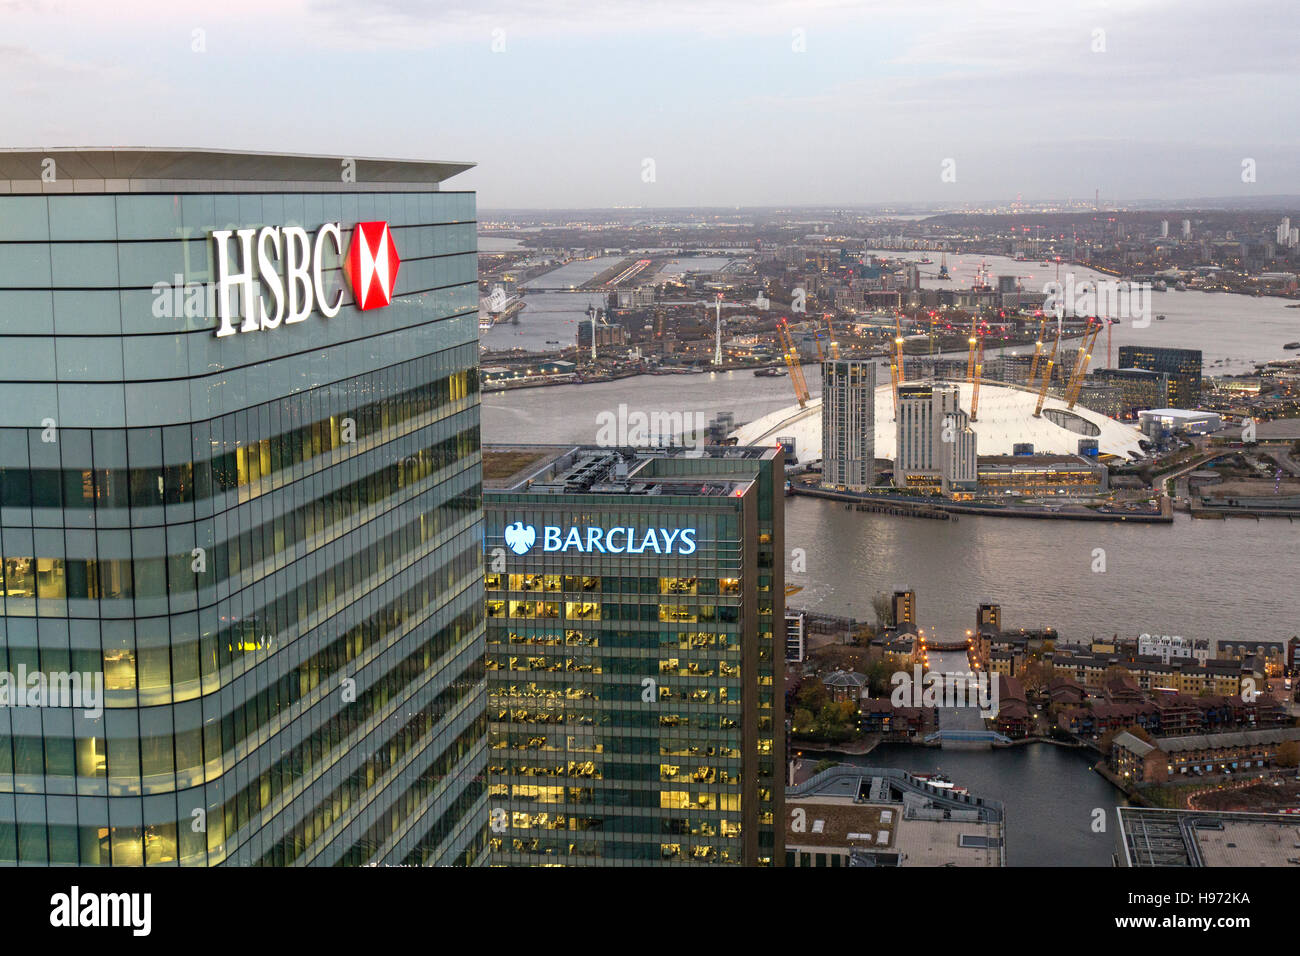 HSBC et Barclays Bank siège à Canary Wharf à Londres. L'O2 arena, Tamise, et l'aéroport de Londres en arrière-plan Banque D'Images